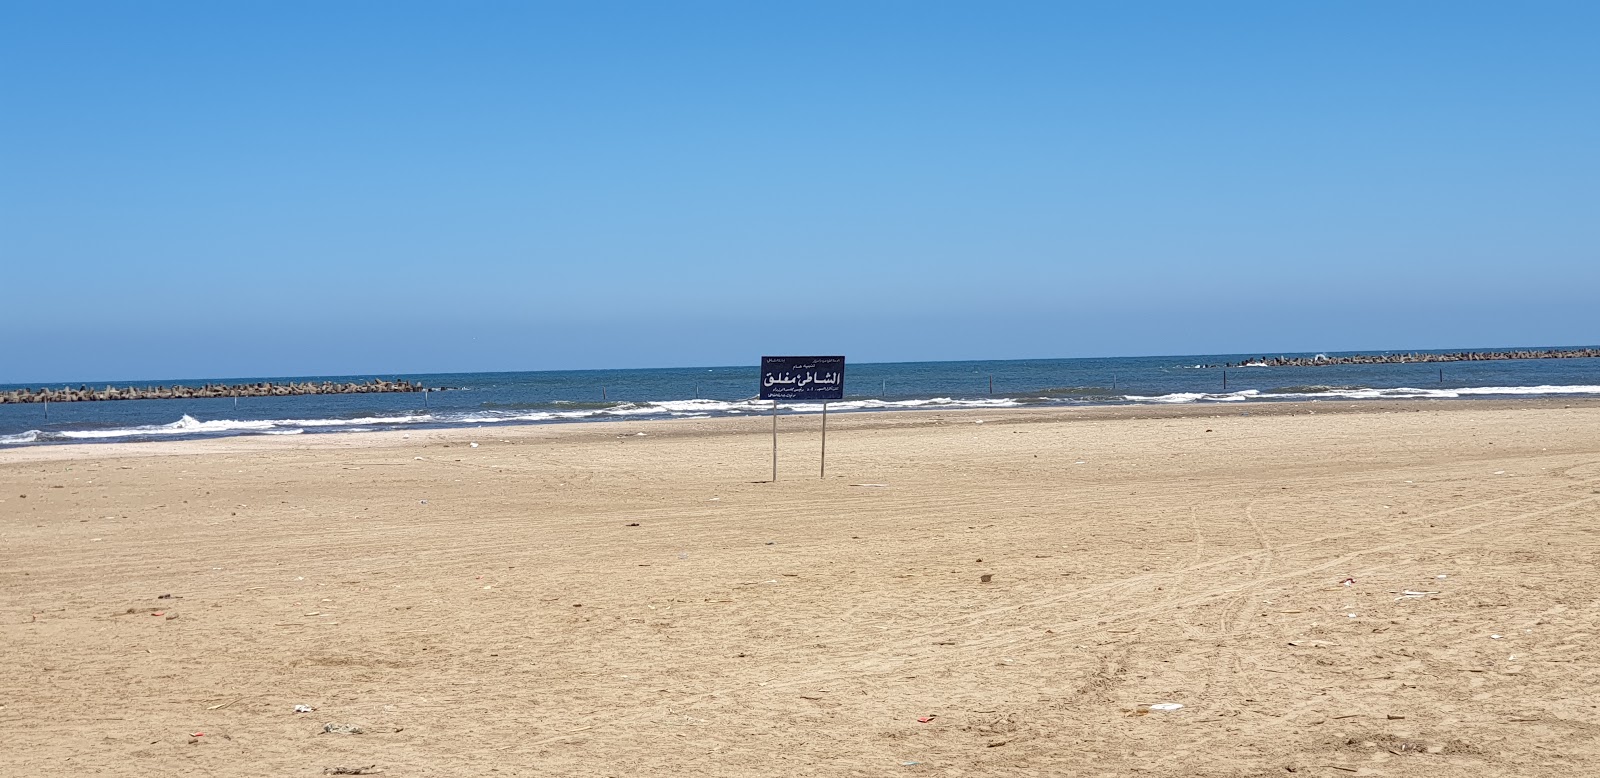 Foto de Ras El-Bar II com praia espaçosa